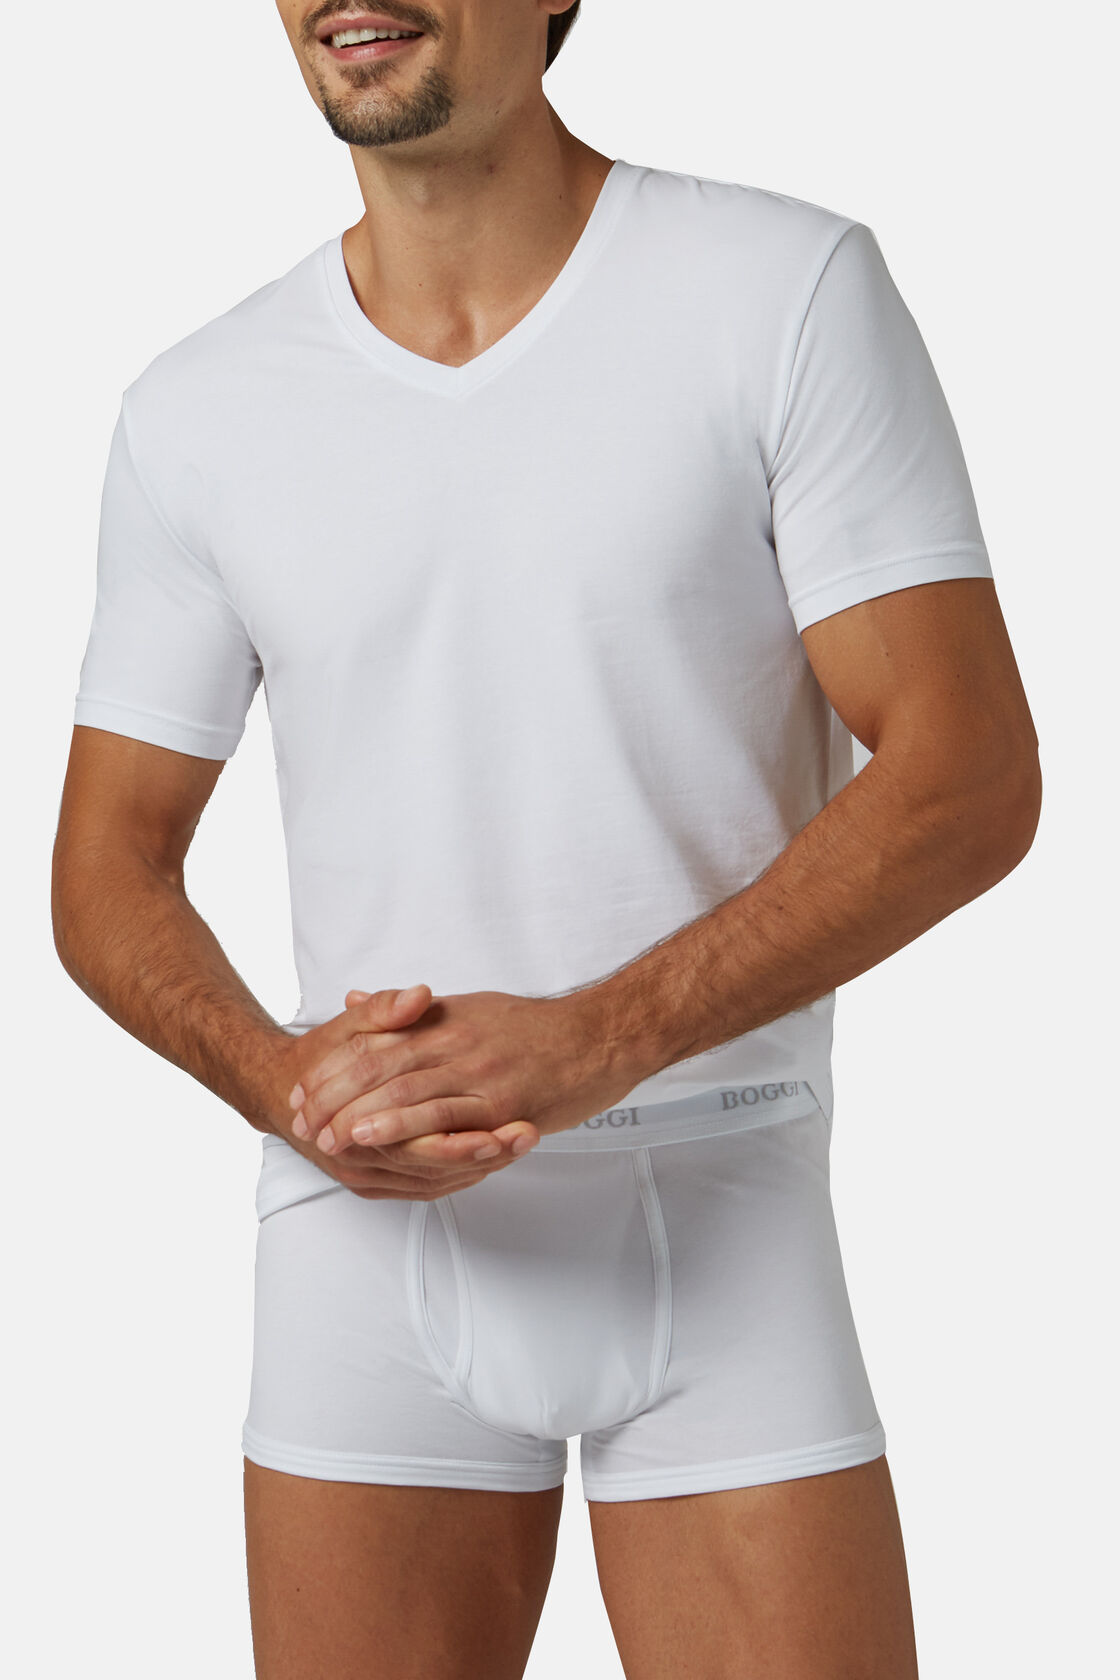 Camiseta En Punto De Algodón Elastificado, Blanco, hi-res